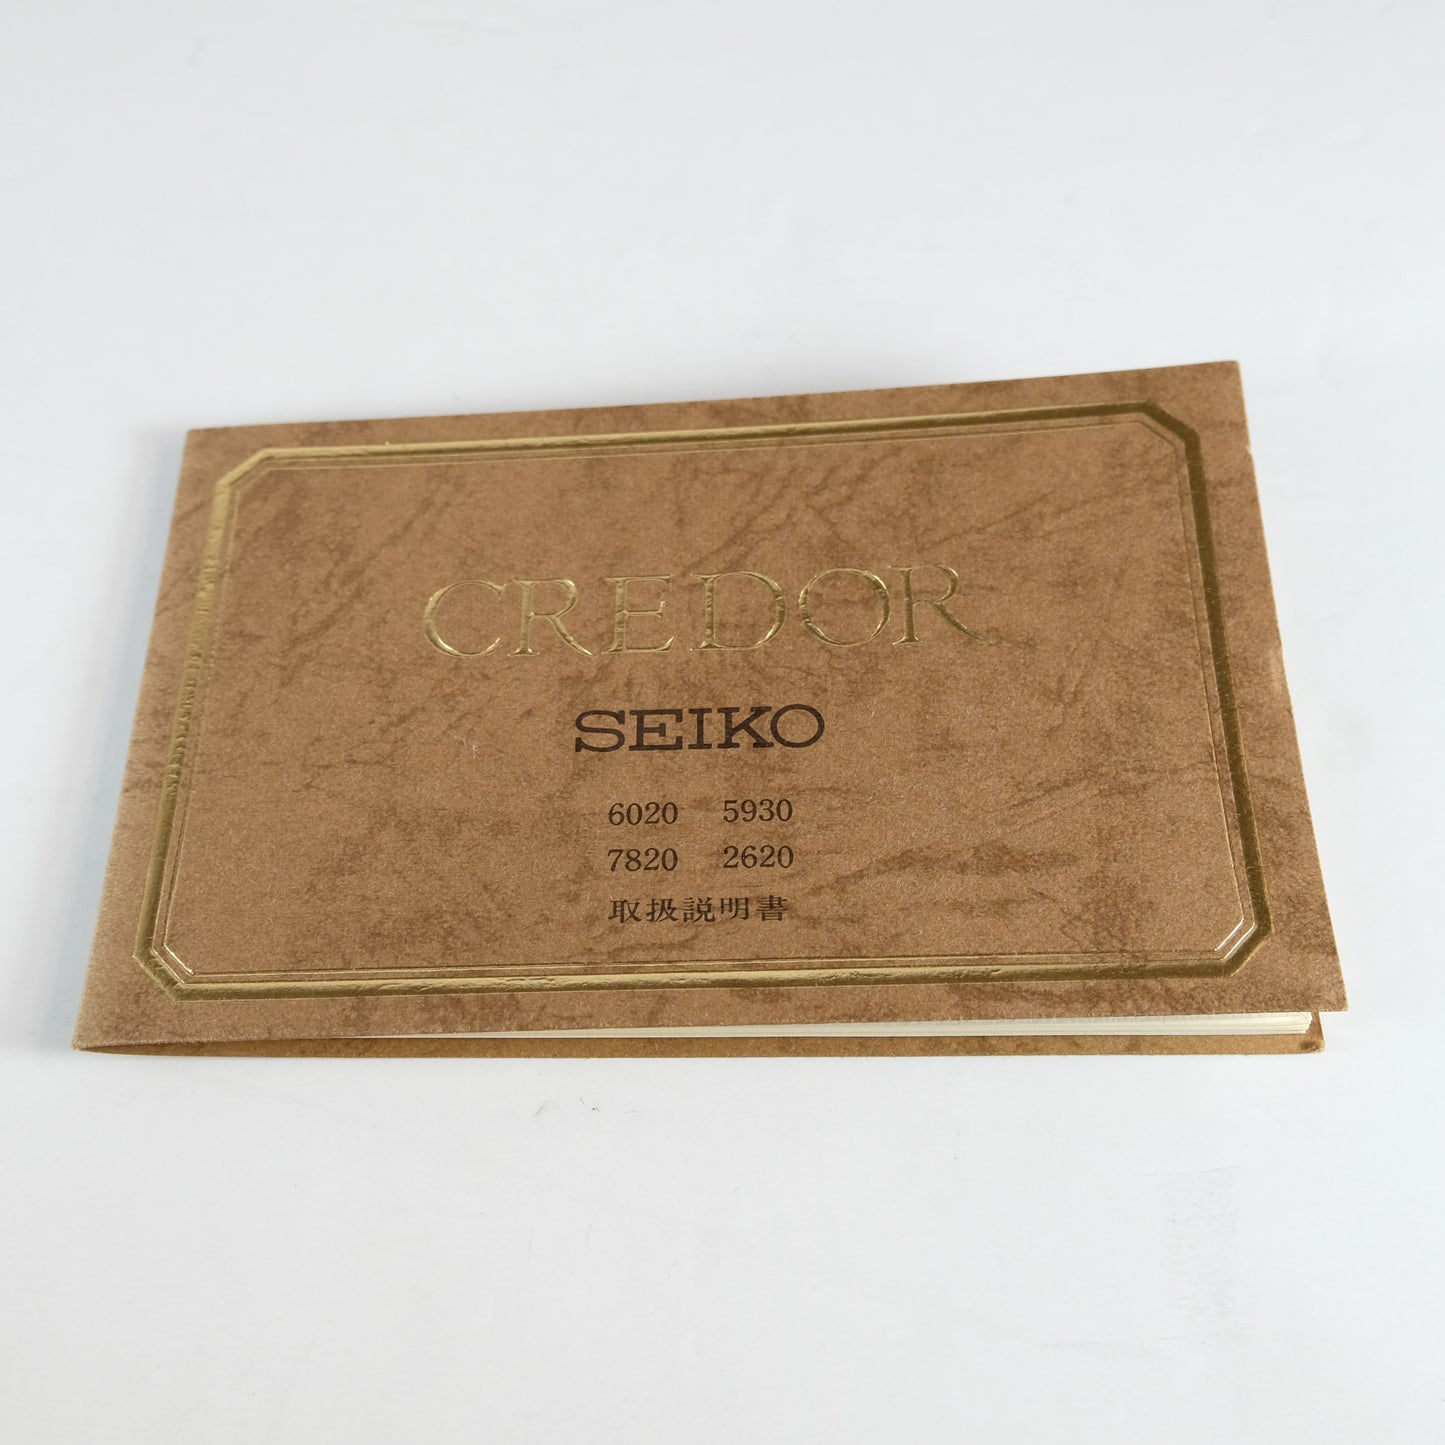 1979 Credor Seiko 6020-5170